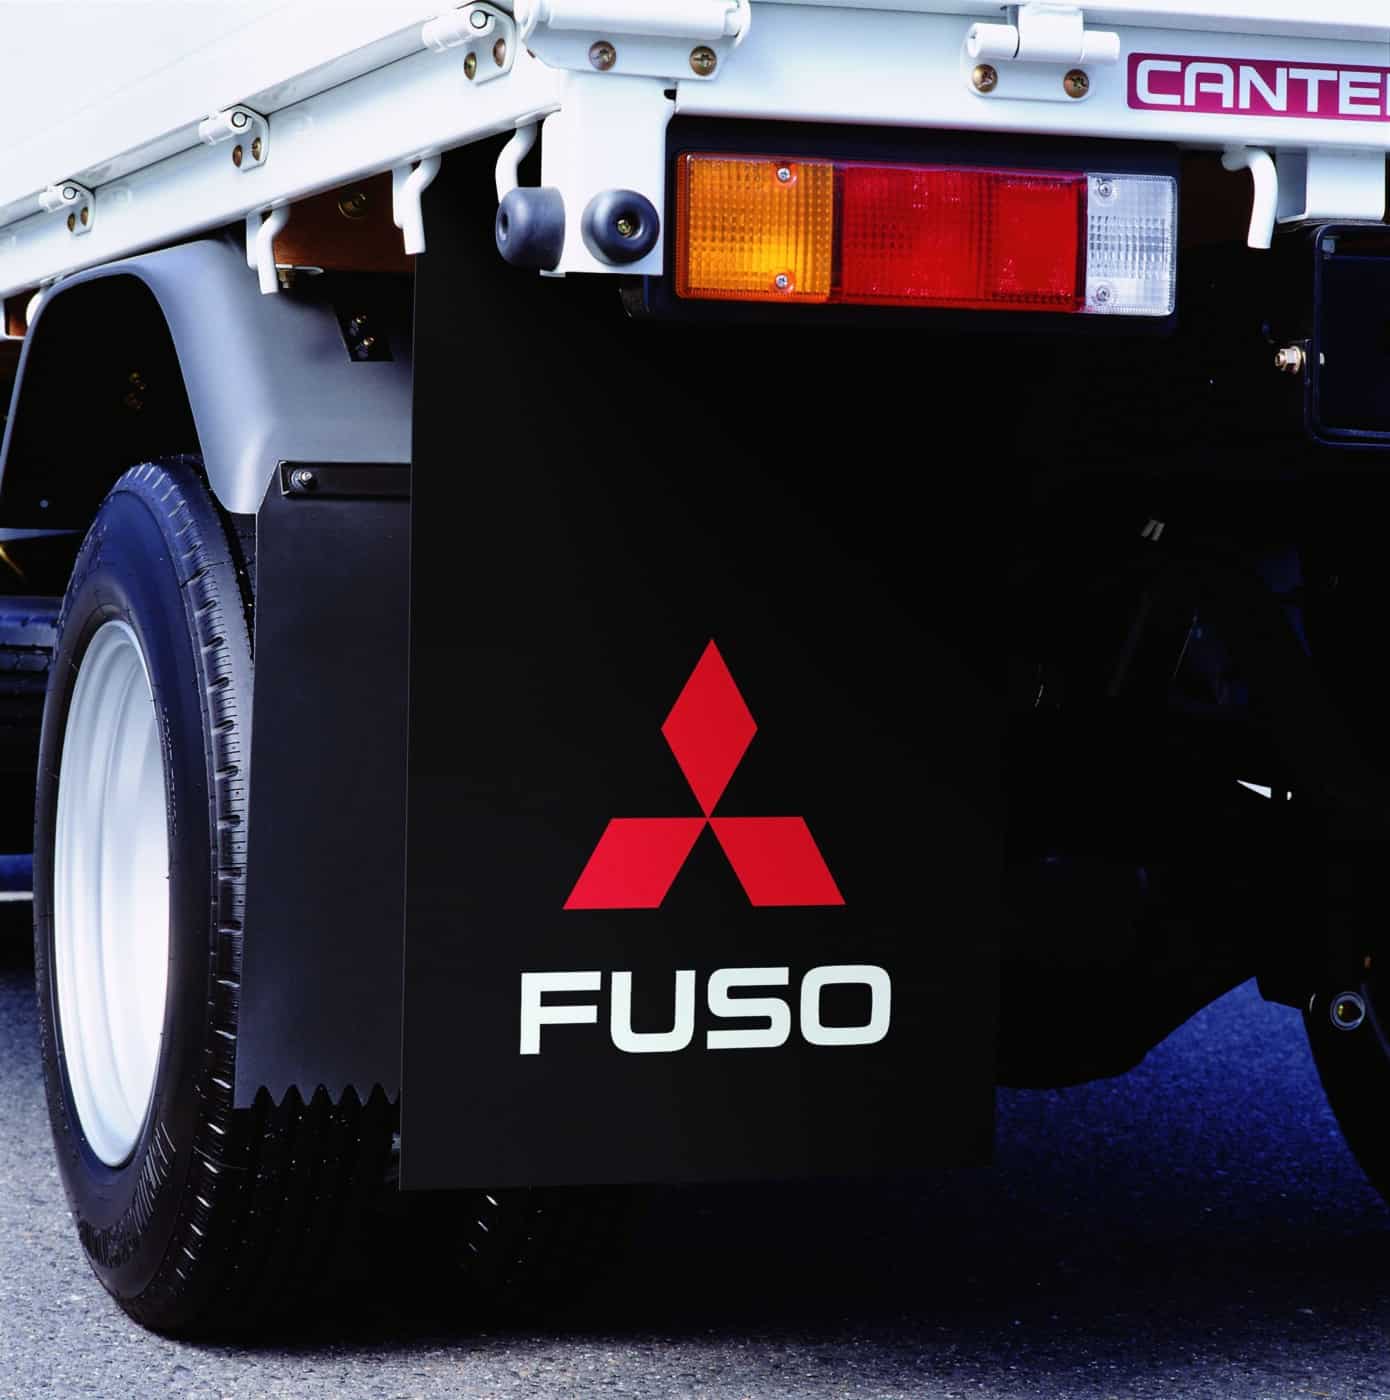 FUSO stänkskydd skyddar fordonet, passagerarna, andra fordon och fotgängare mot lera och smuts som virvlas upp av däcken.